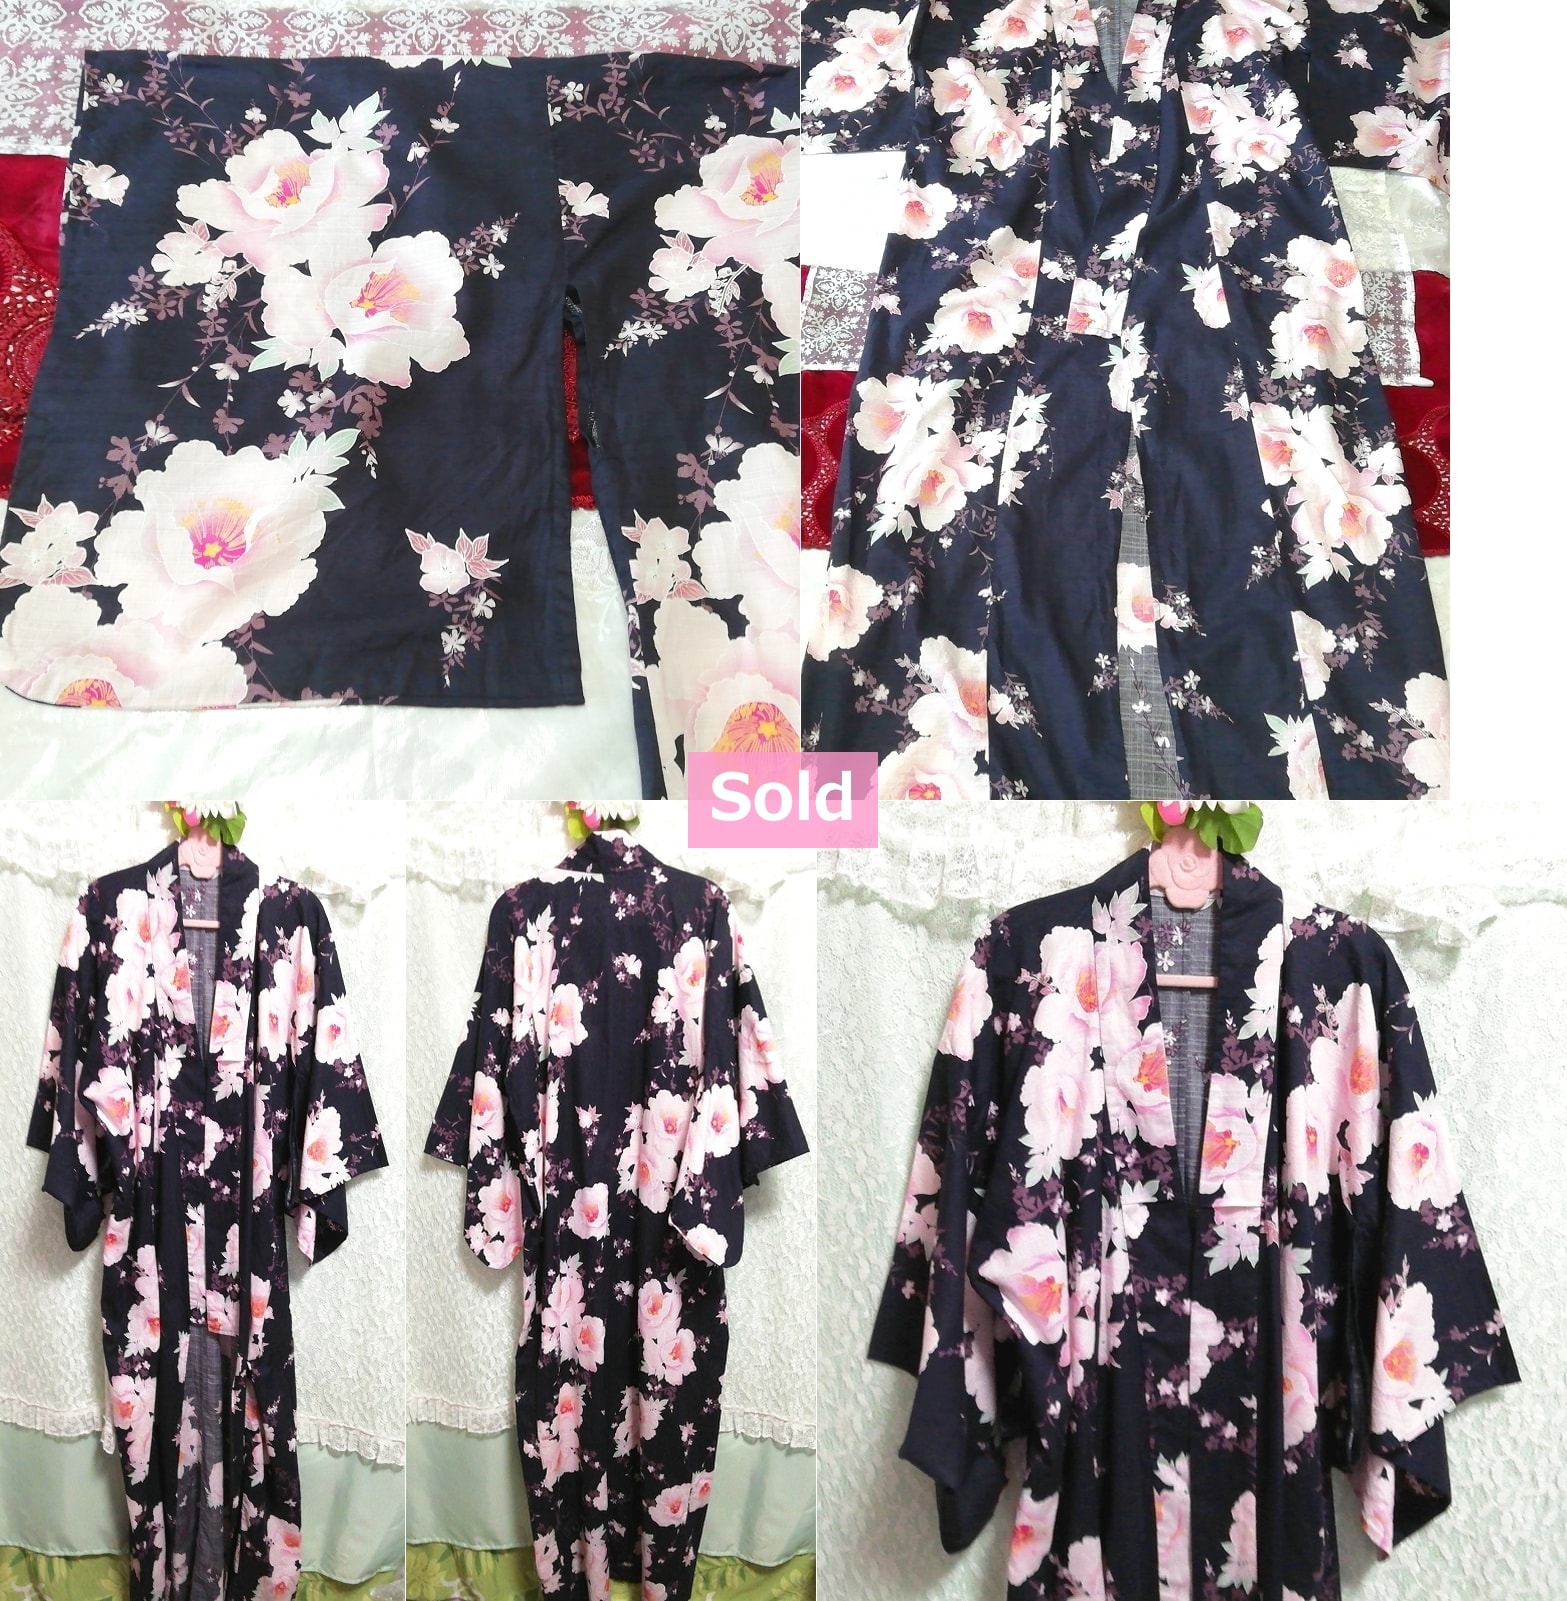 紺白桜ピンク花柄浴衣和服着物日本ドレス Navy blue white cherry blossom pink floral yukata kimono japan dress, 女性和服、着物&浴衣&その他